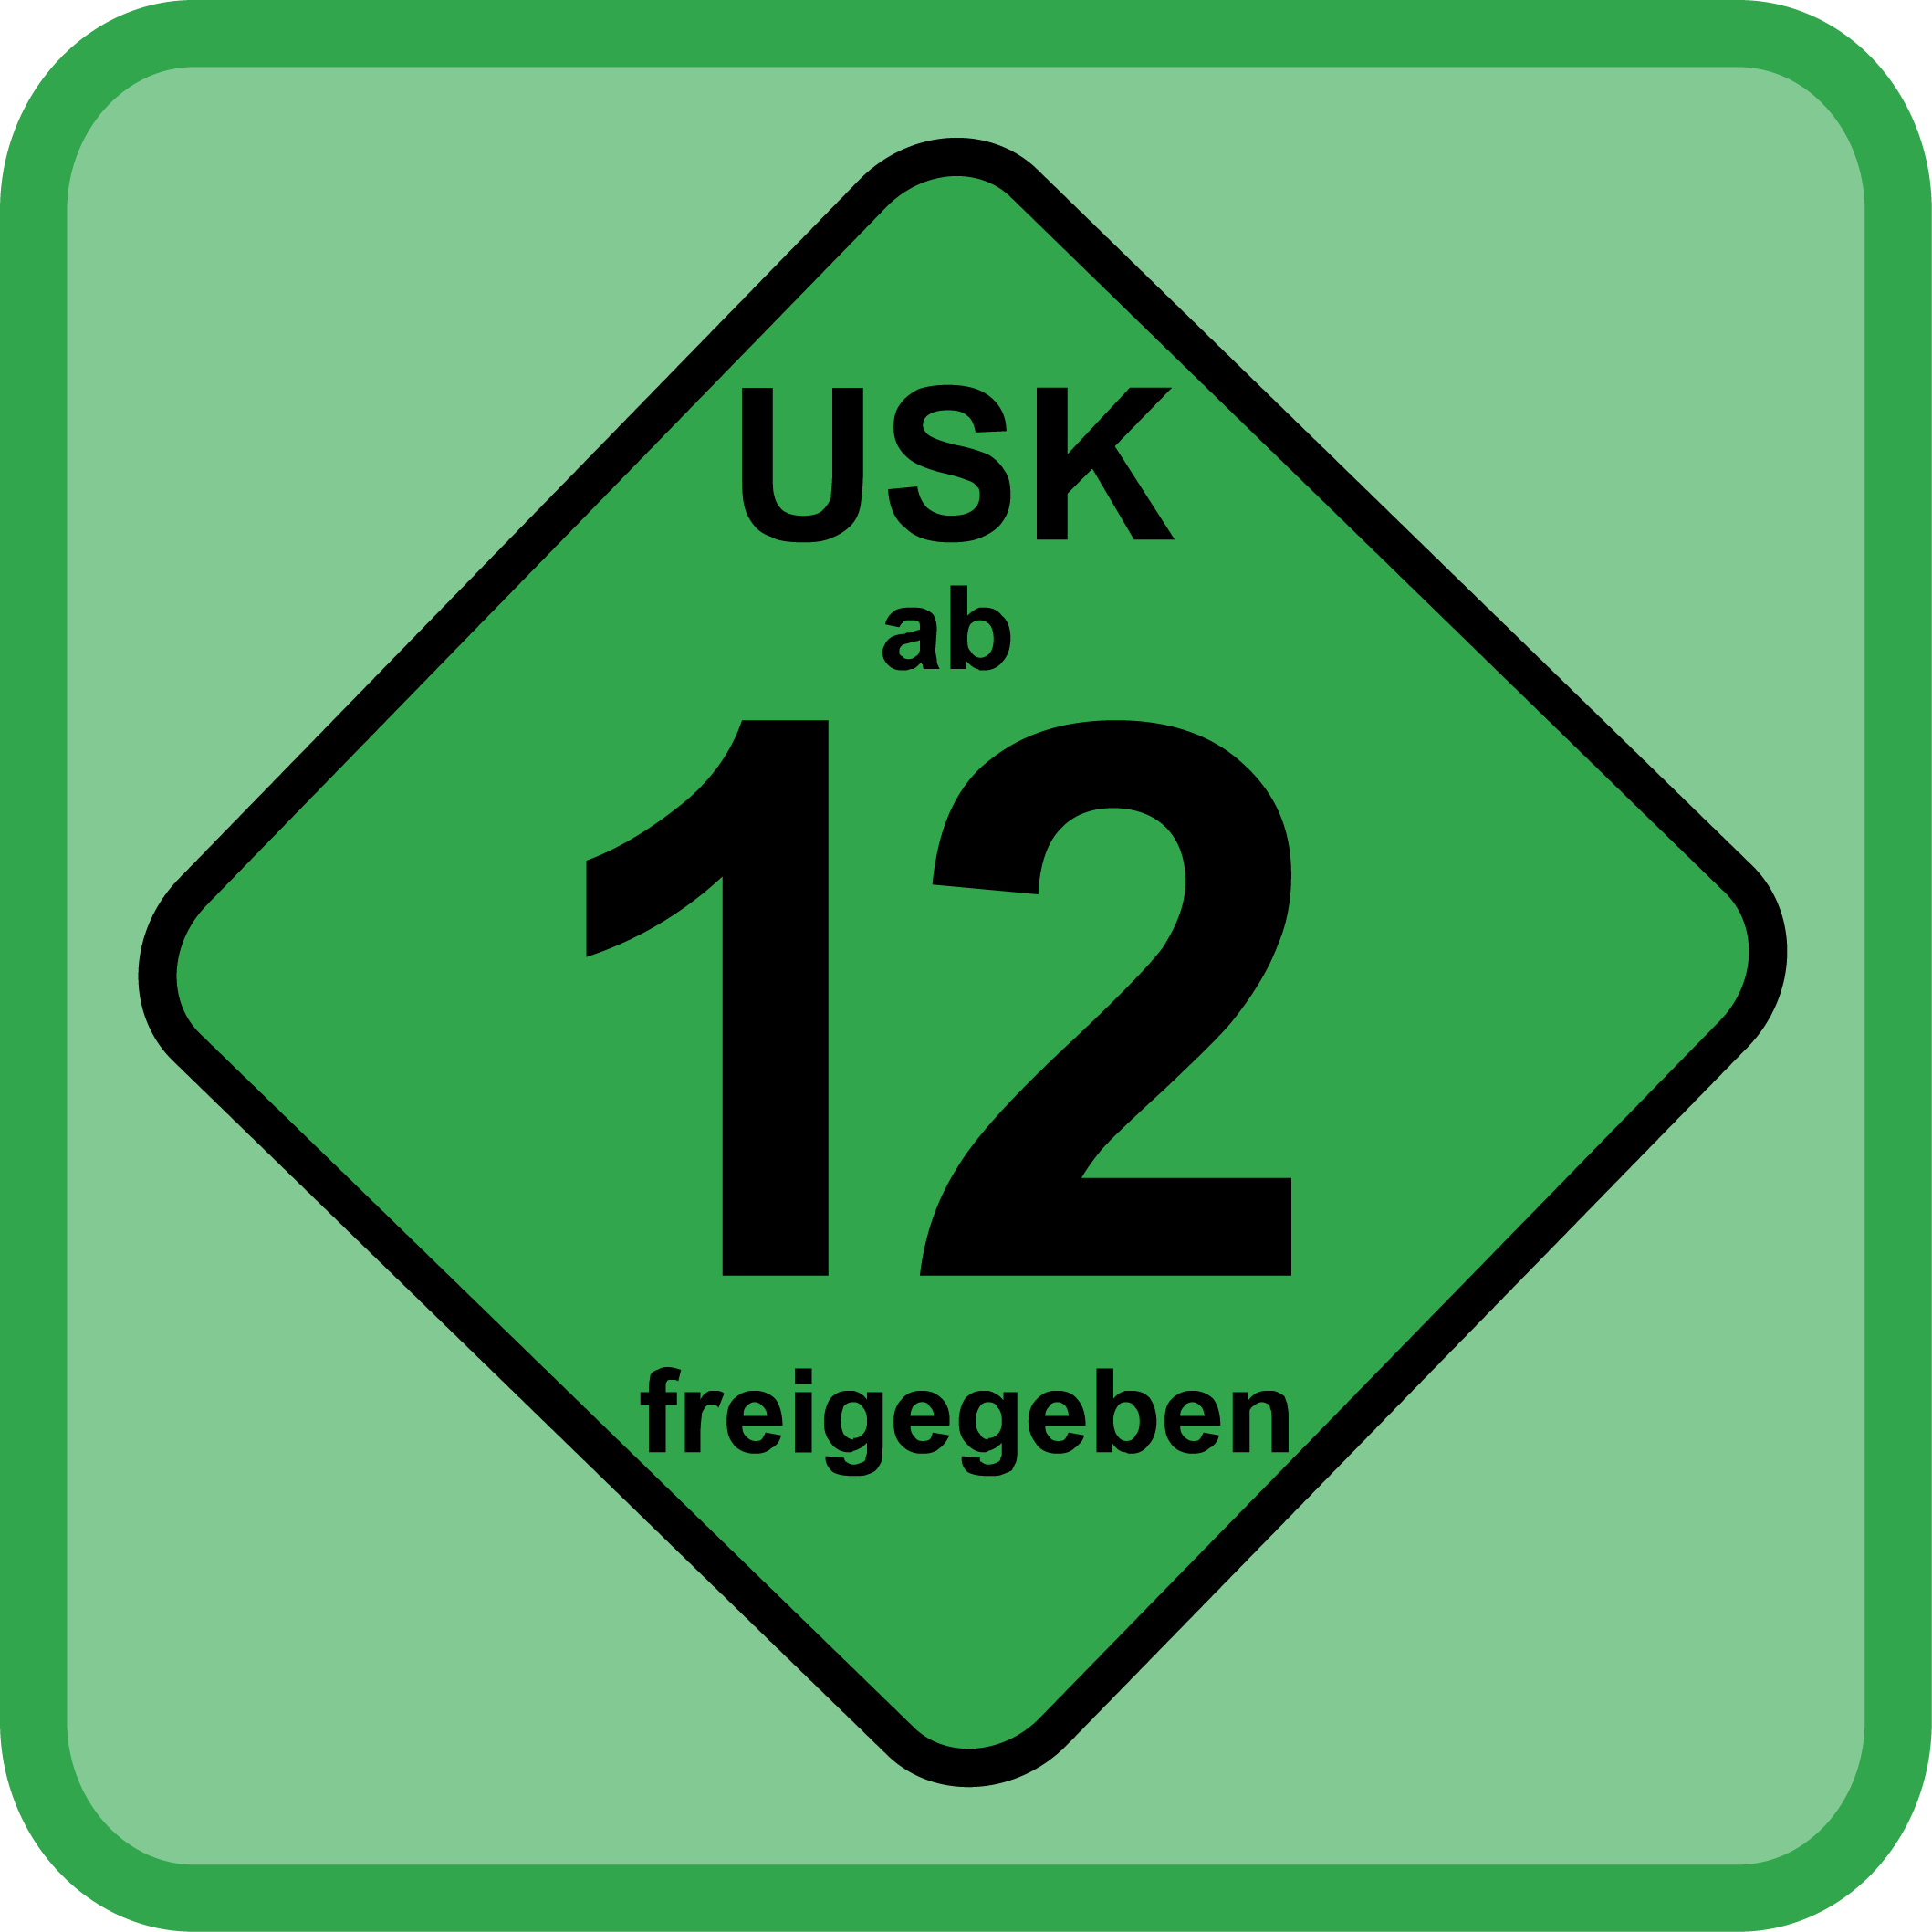 Usk12